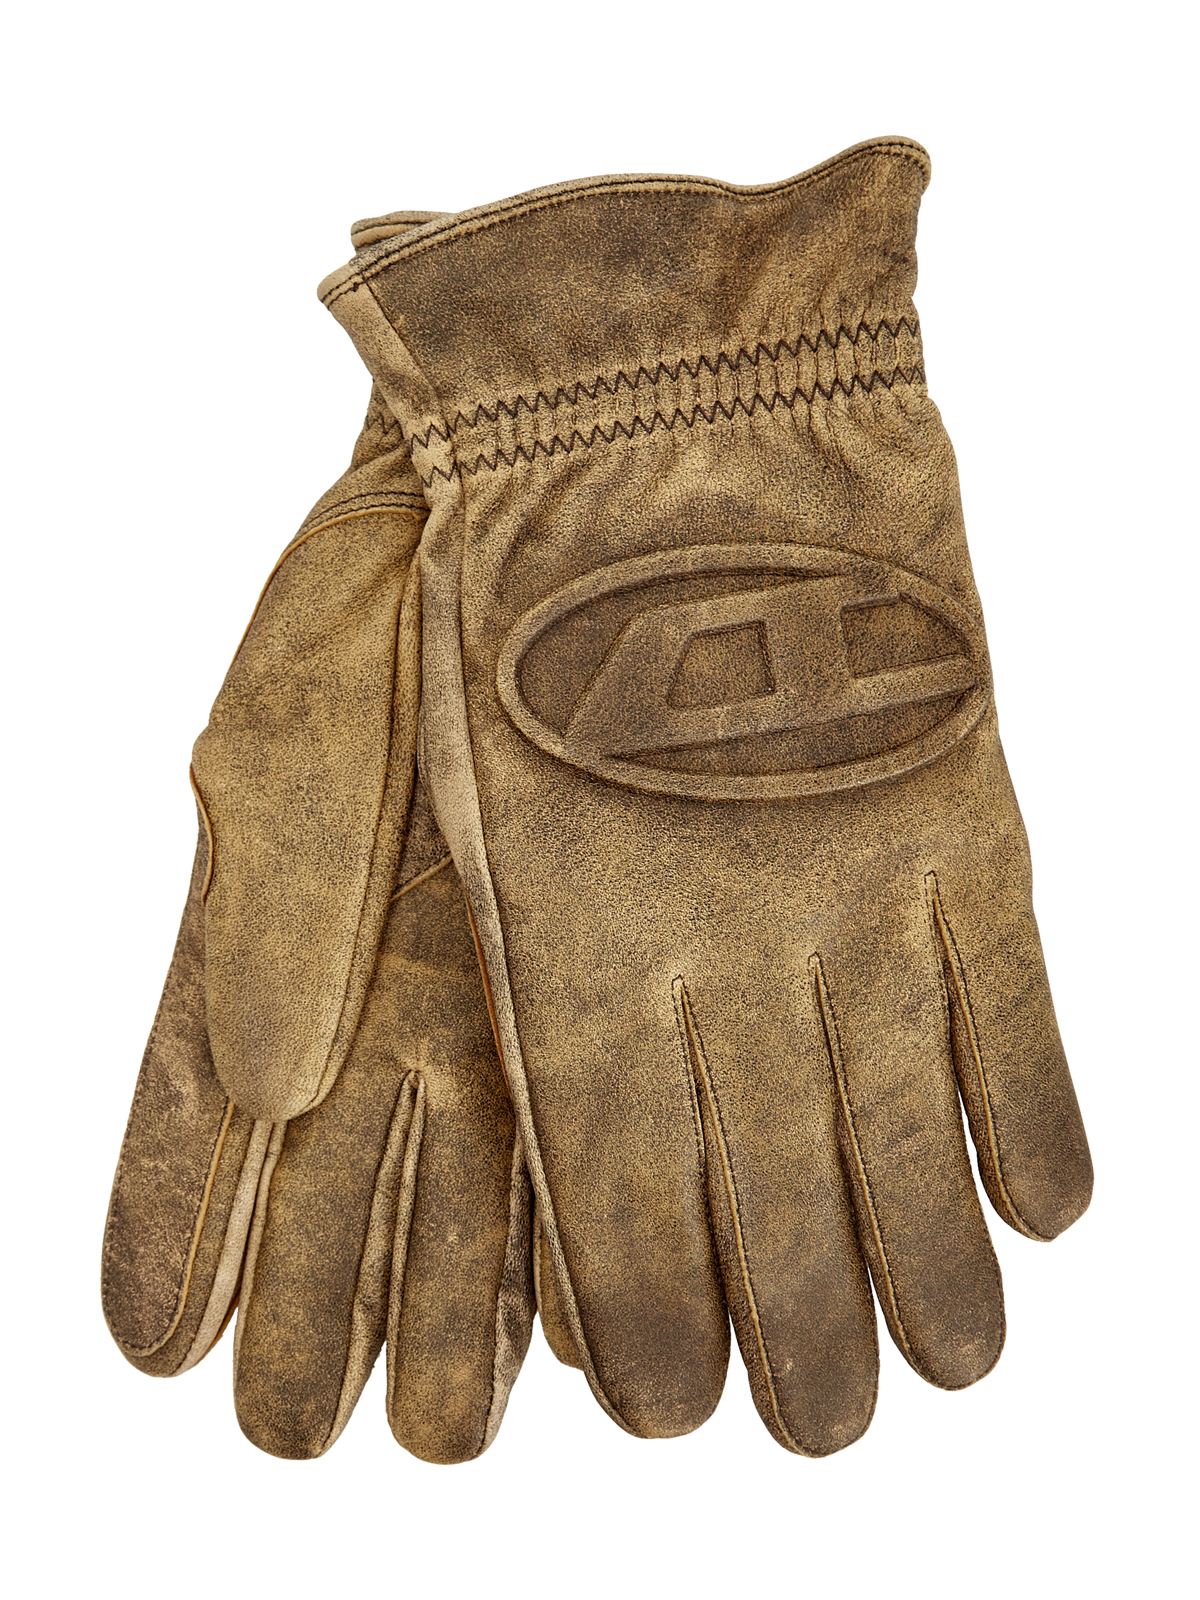 Кожаные перчатки G-Alb с подкладкой из шерсти и логотипом DIESEL, цвет коричневый, размер M - фото 1